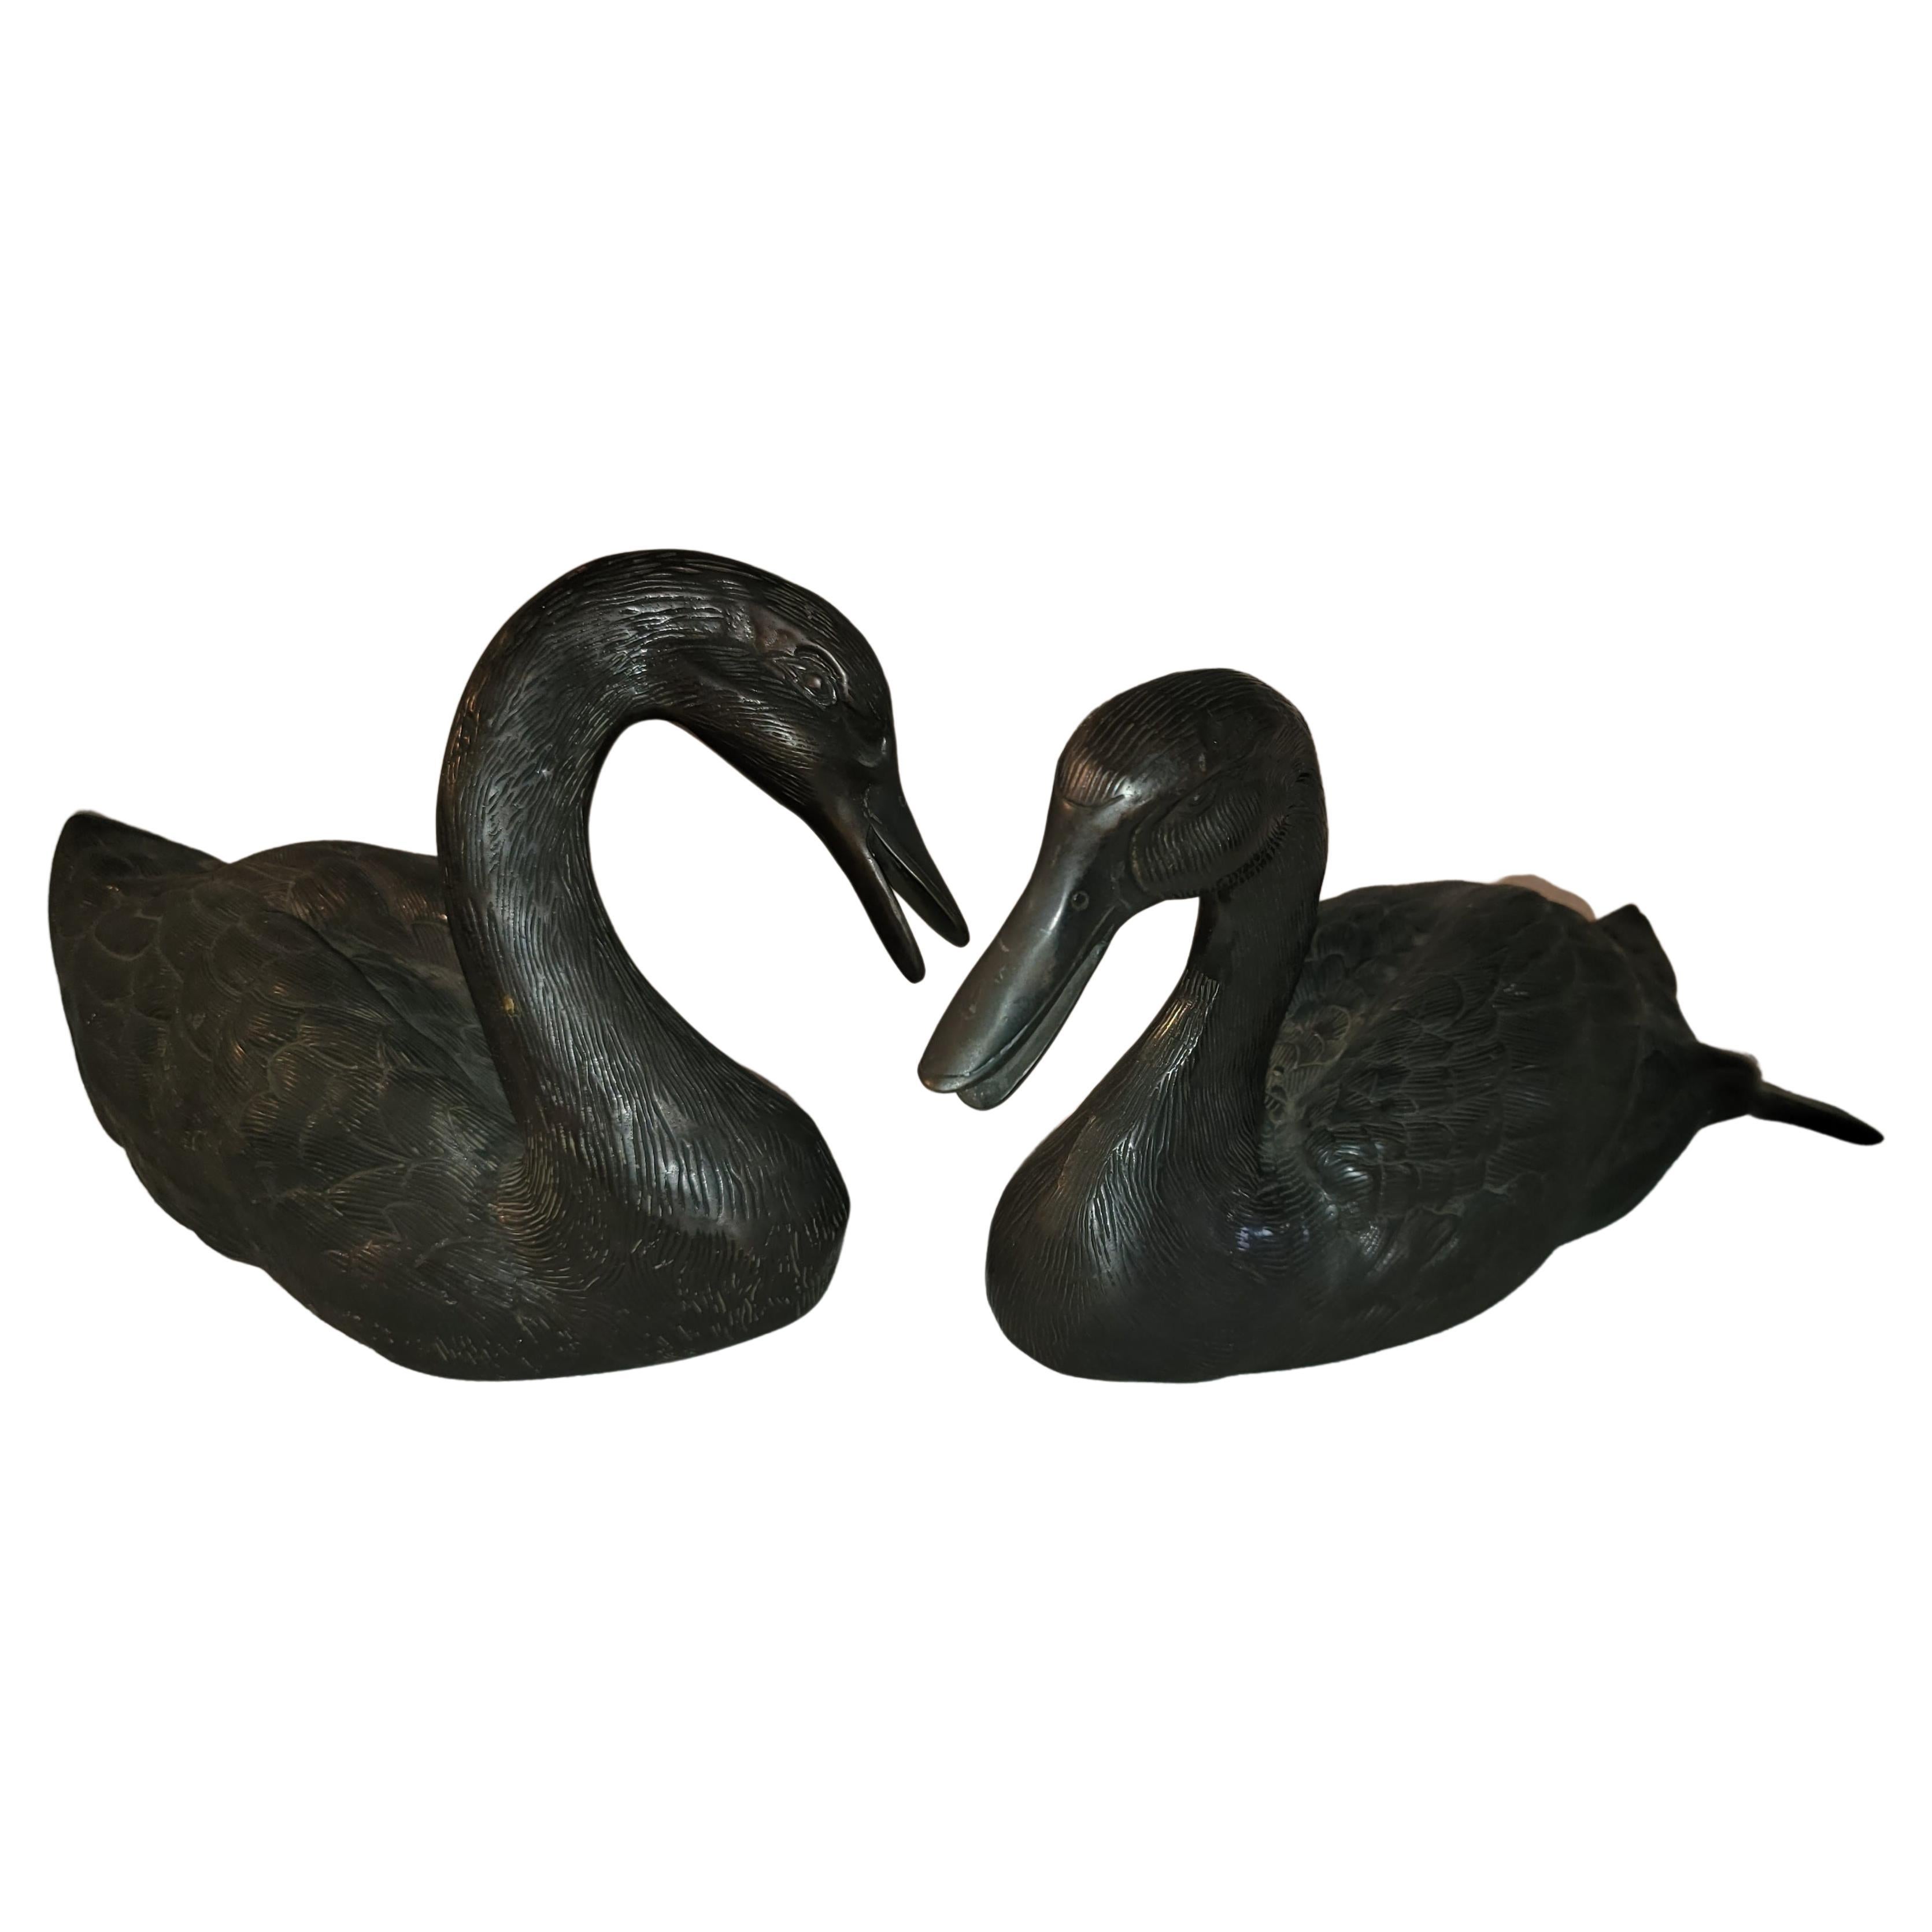 20th C bronze ducks - pair.